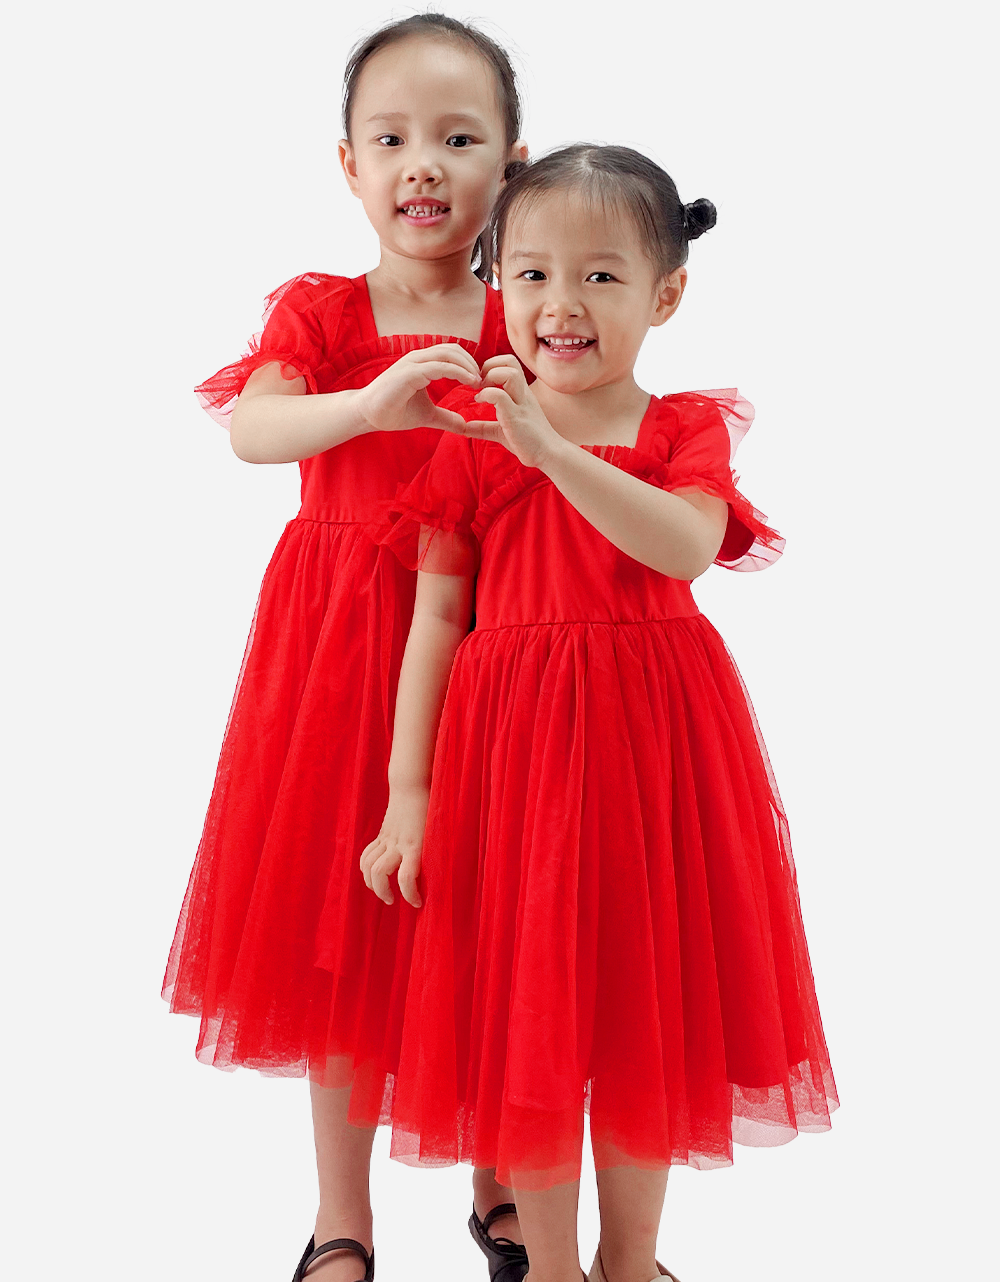 Váy đỏ, váy công chúa, quần áo trẻ em giá sỉ, giá bán buôn - Thị Trường Sỉ